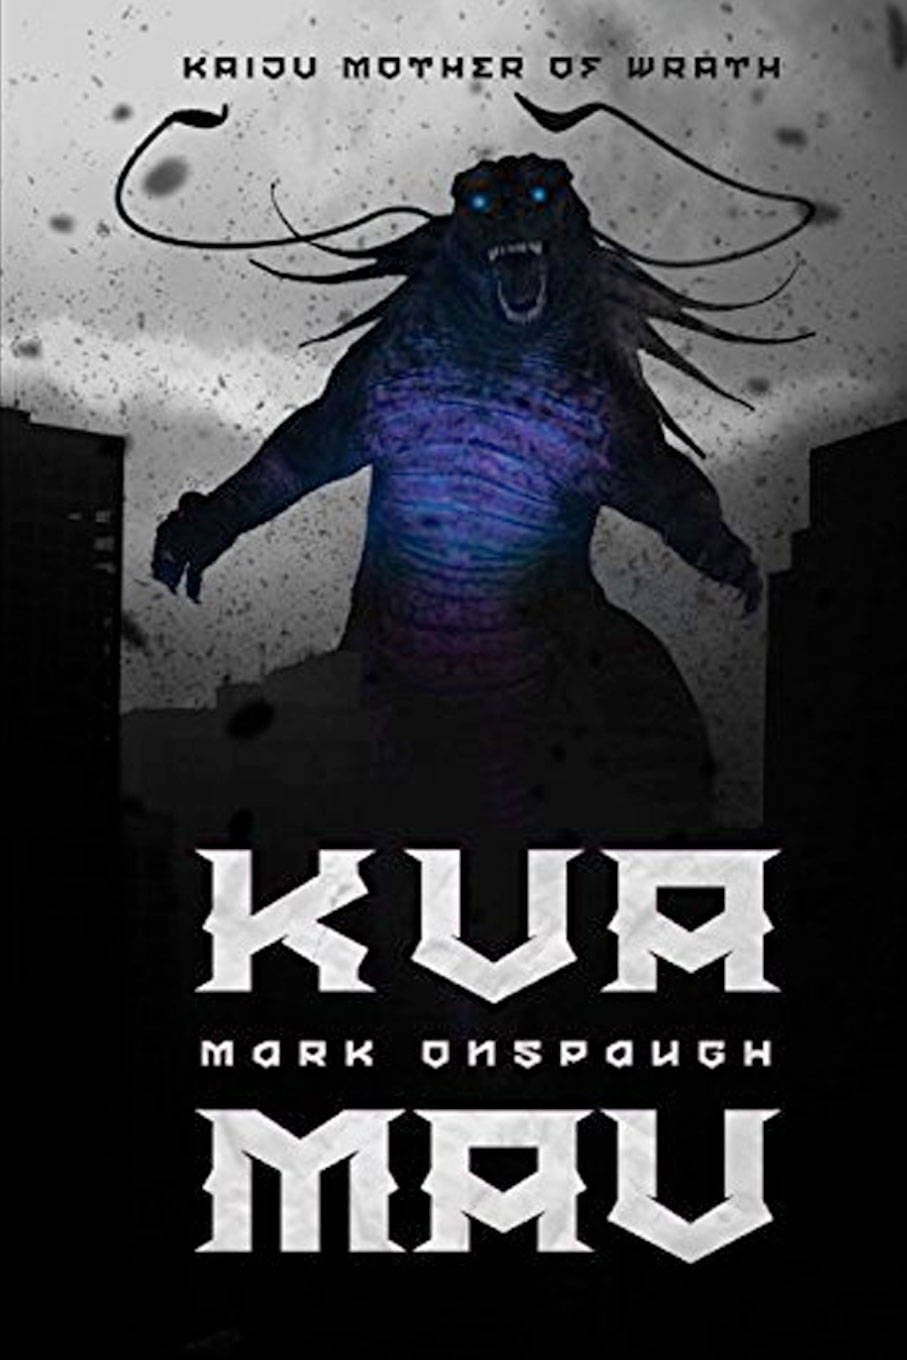 Kua'Mau: Kaiju Mother Of Wrath